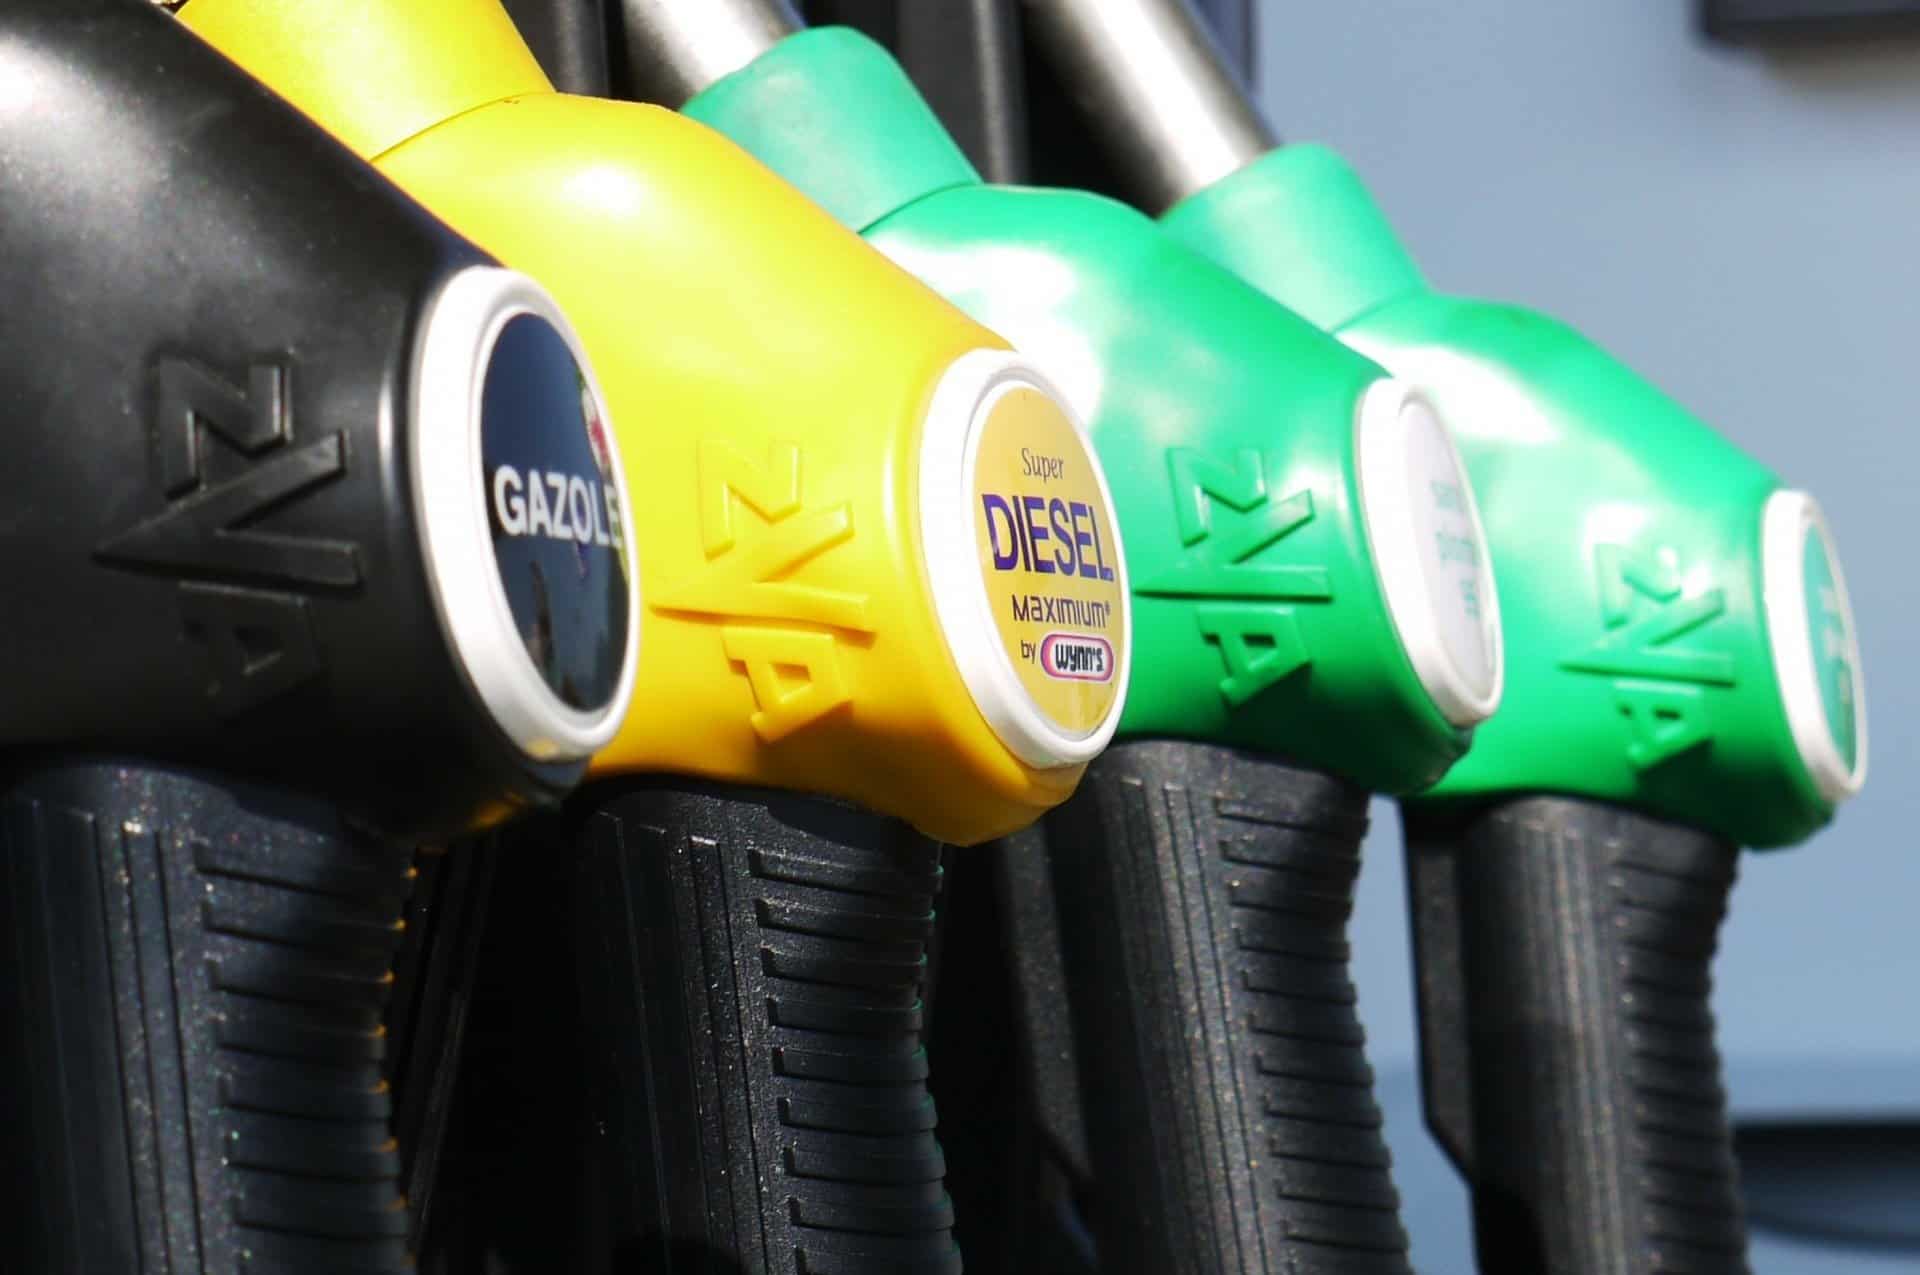 Prezzi carburante, l’Antitrust chiede documenti alla Guardia di Finanza